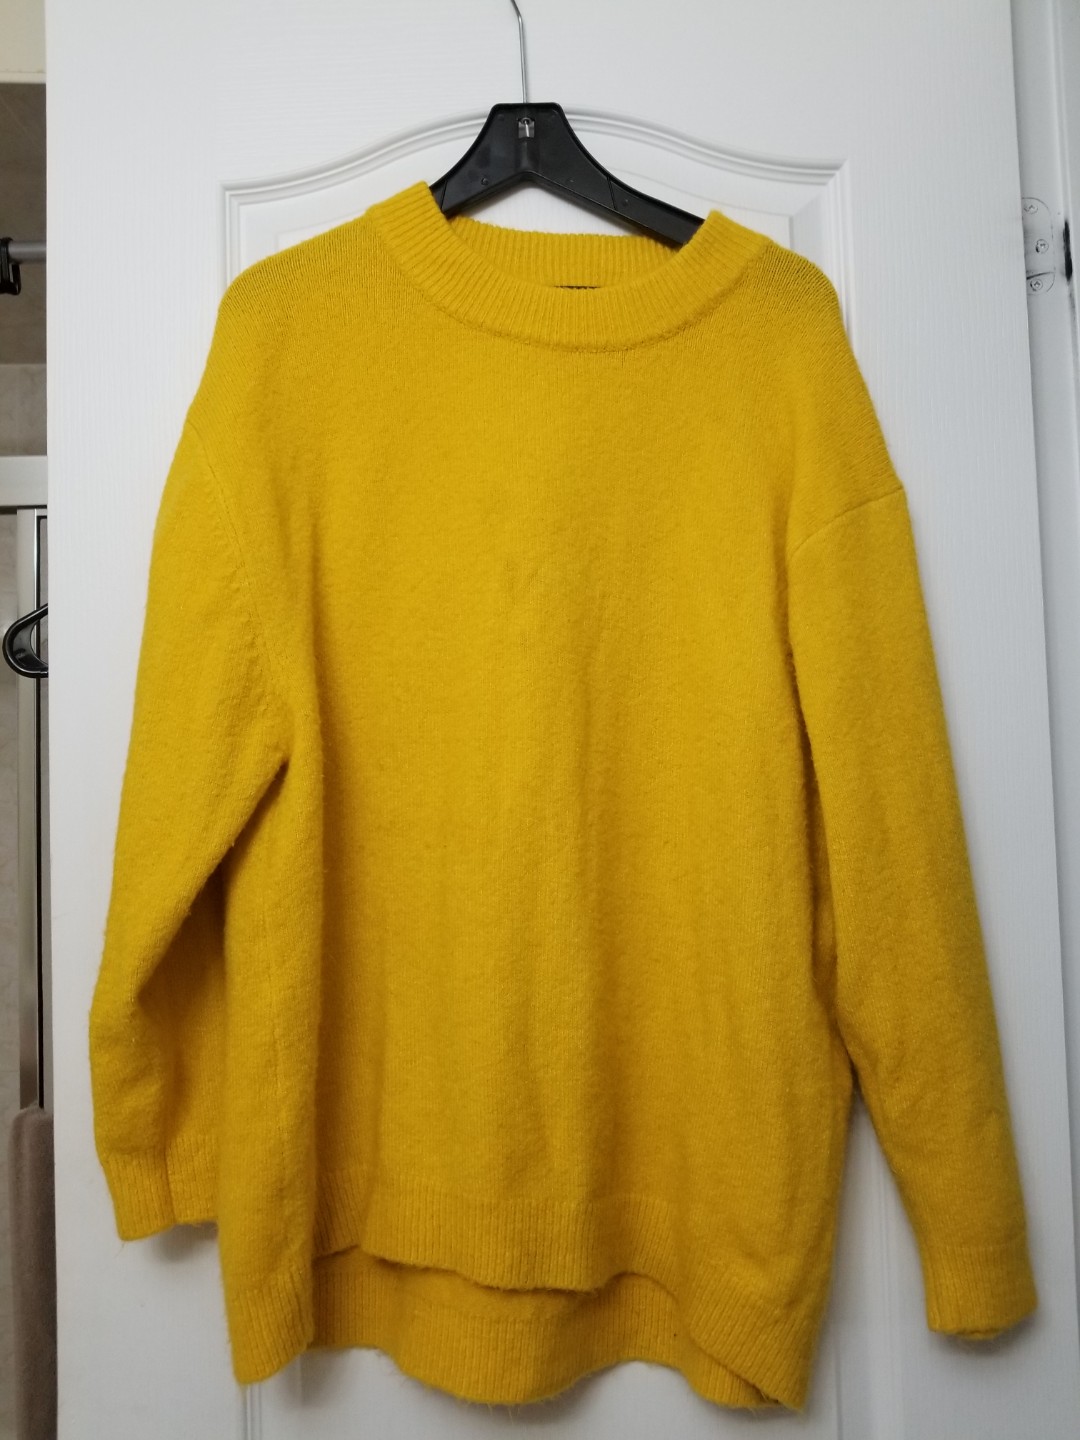 zara yellow sweater